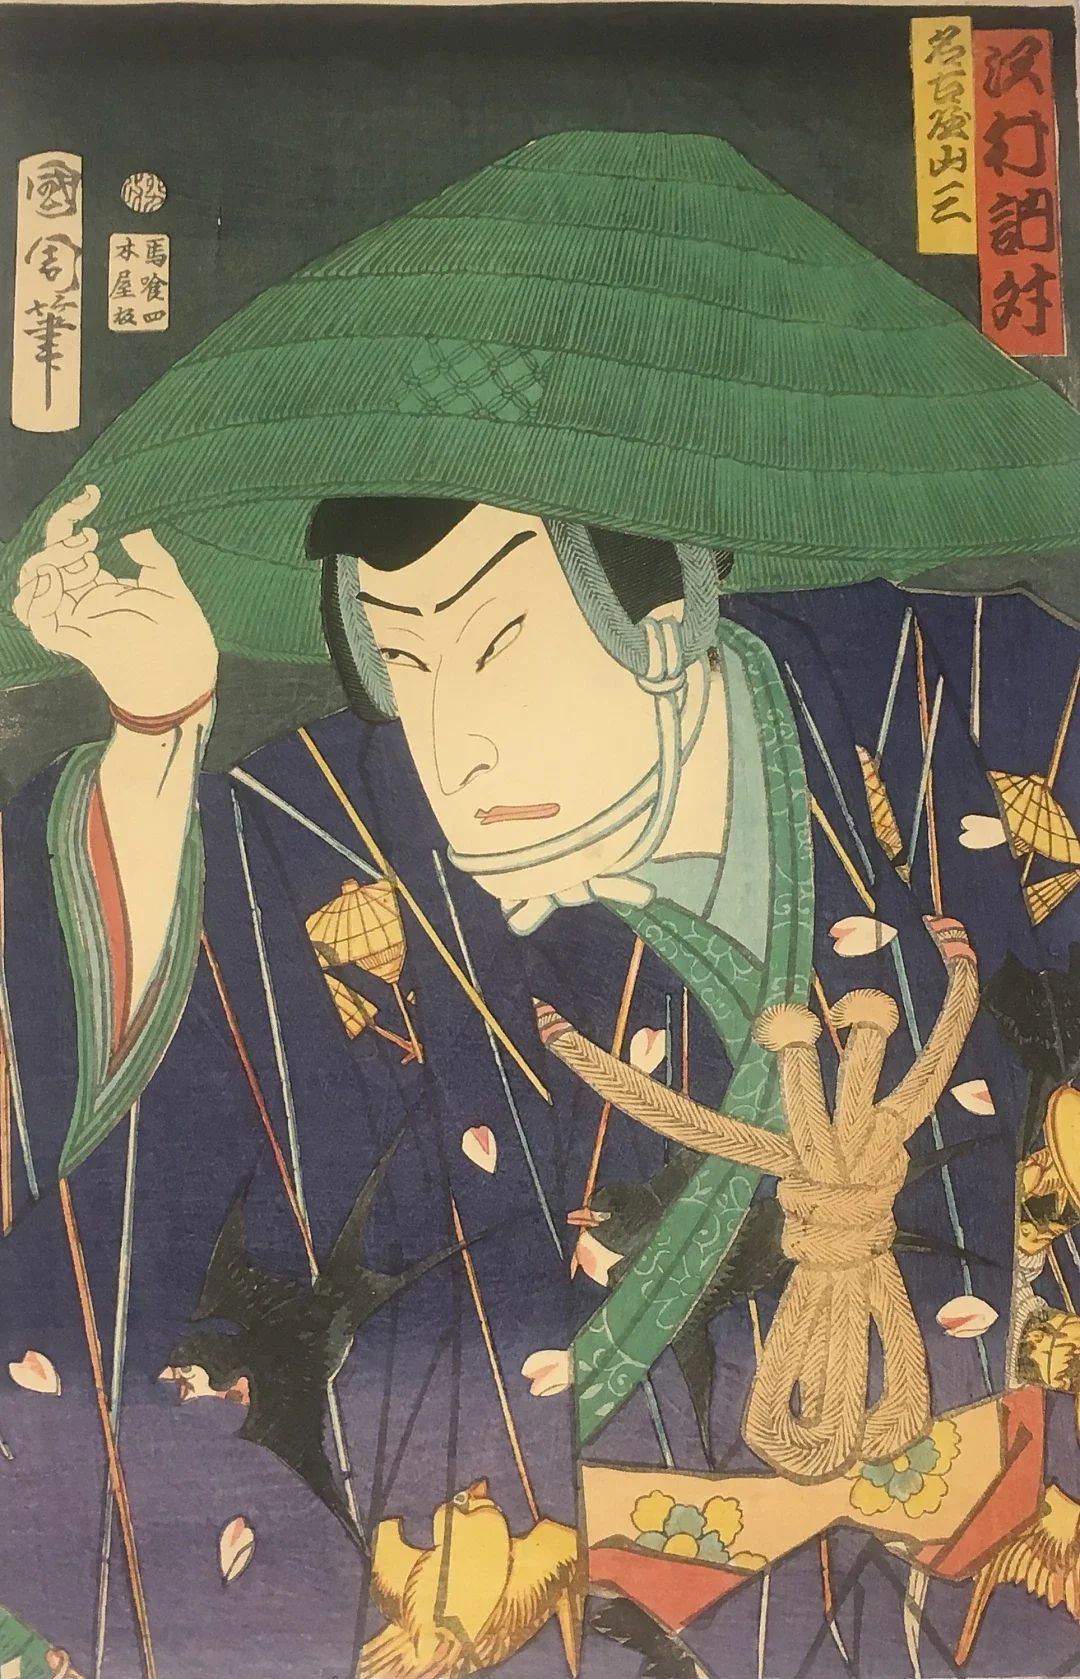 三段式漆器印笼十八世纪末日本江户时代(1603 – 1868)出品印笼是日本江 